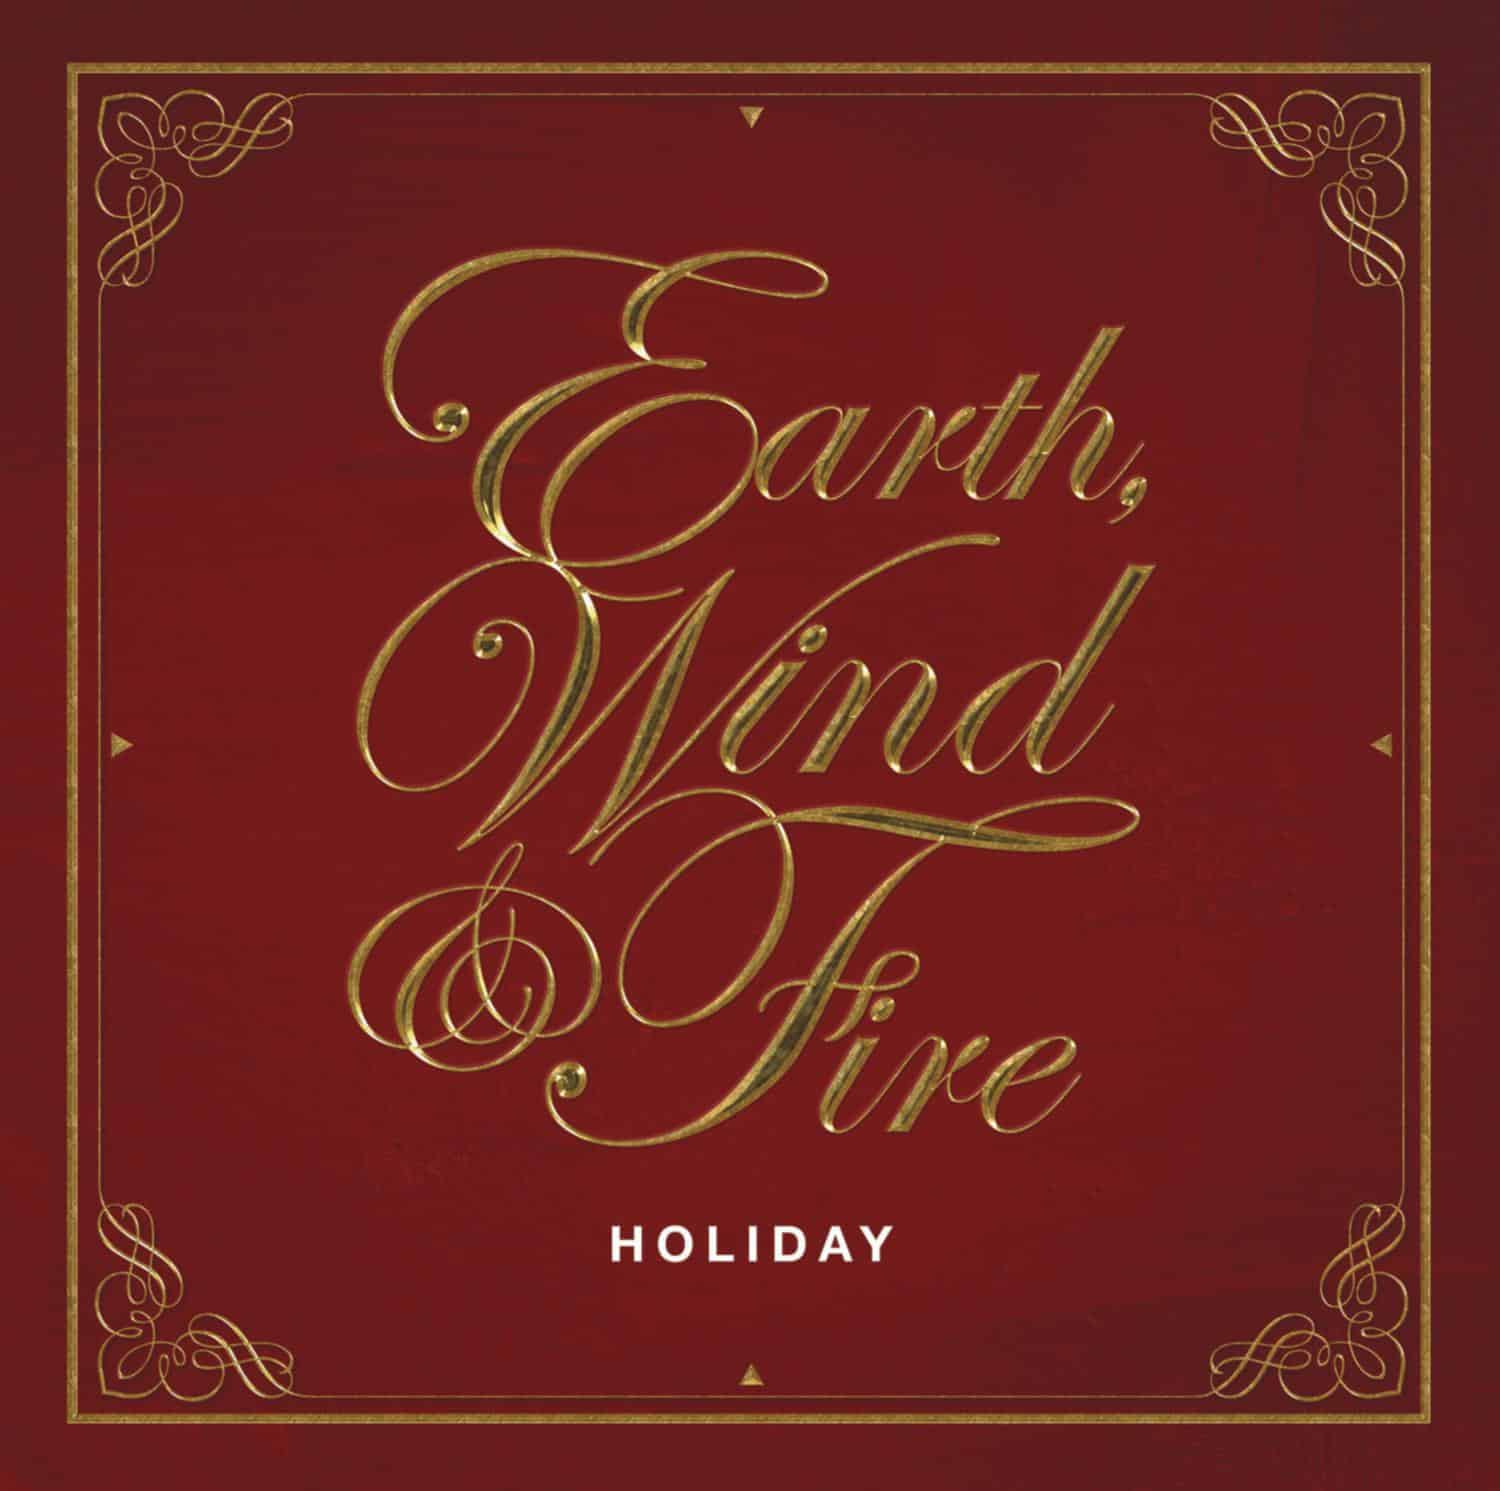 Pierwszy w historii zespołu Earth, Wind & Fire świąteczny album